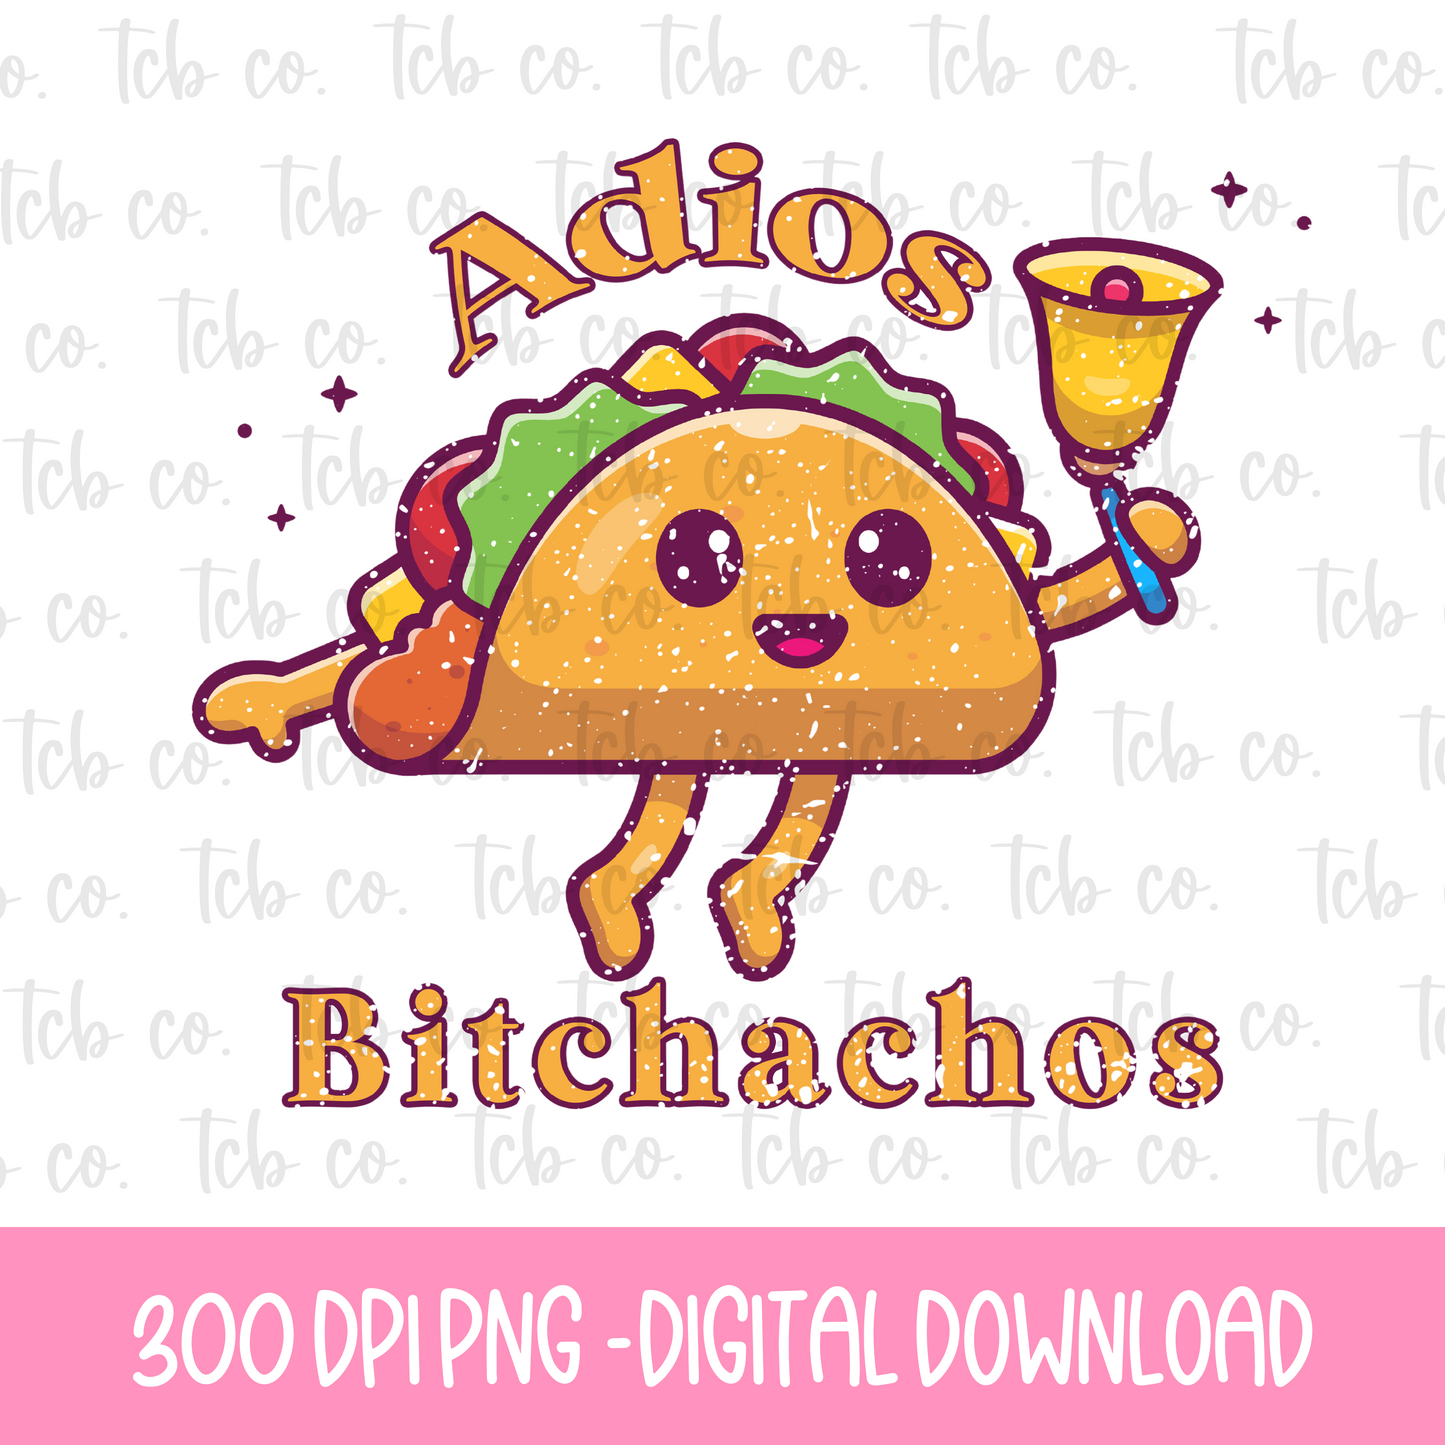 Adios Bitchachos Digital Download